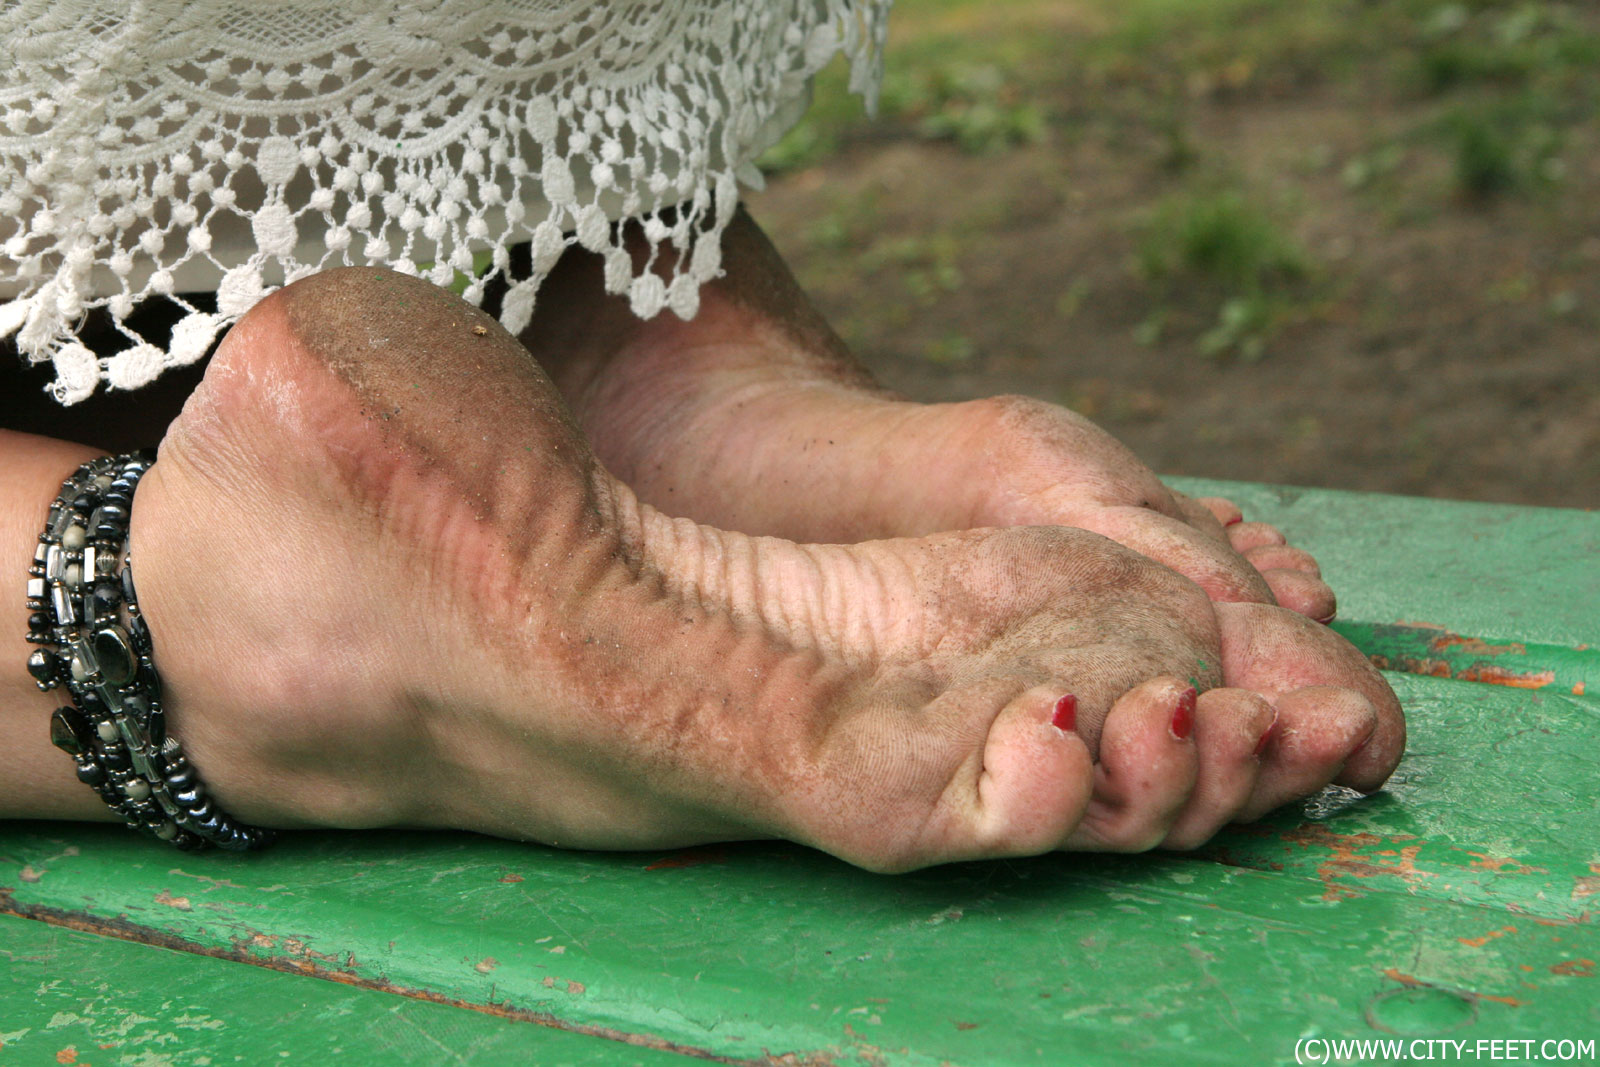 Brazil dirty feet worship